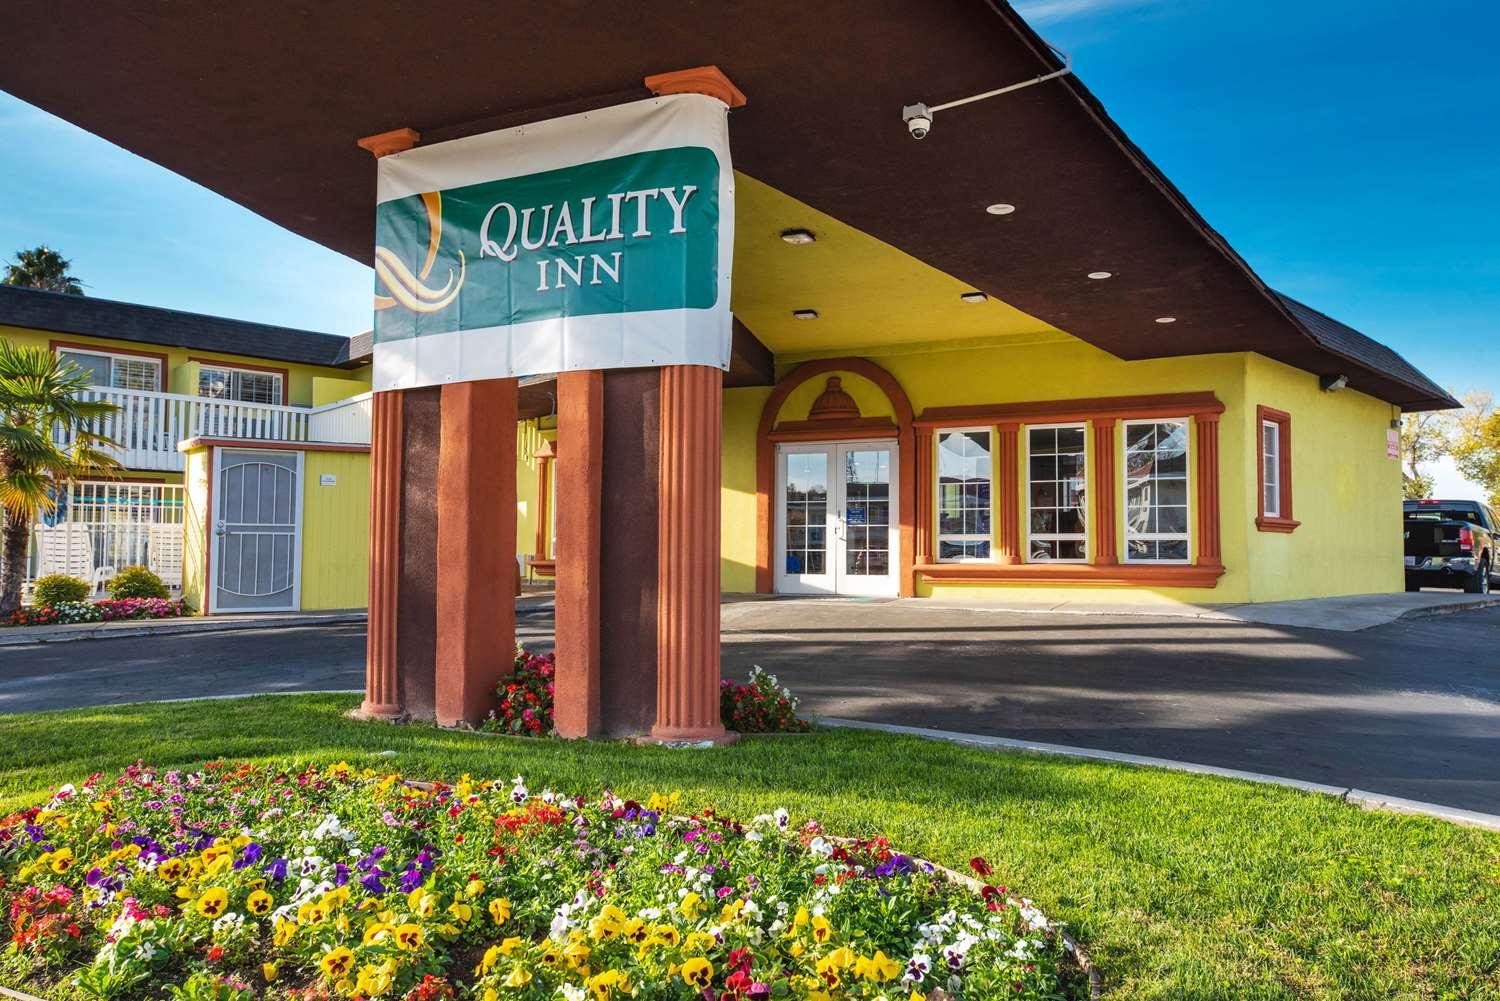 Quality Inn and Suites Sacramento in Sacramento, CA